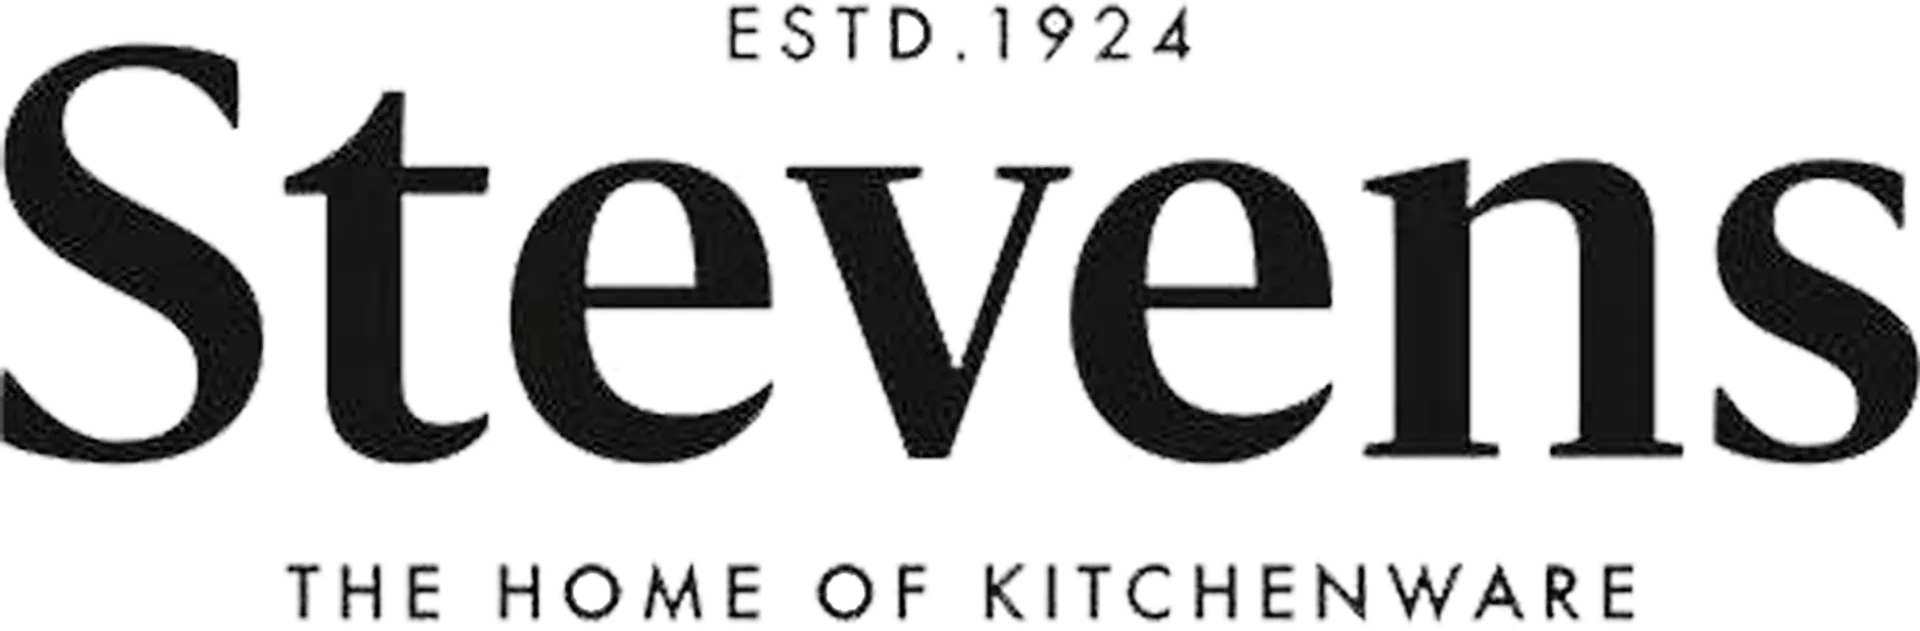 STEVENS logo